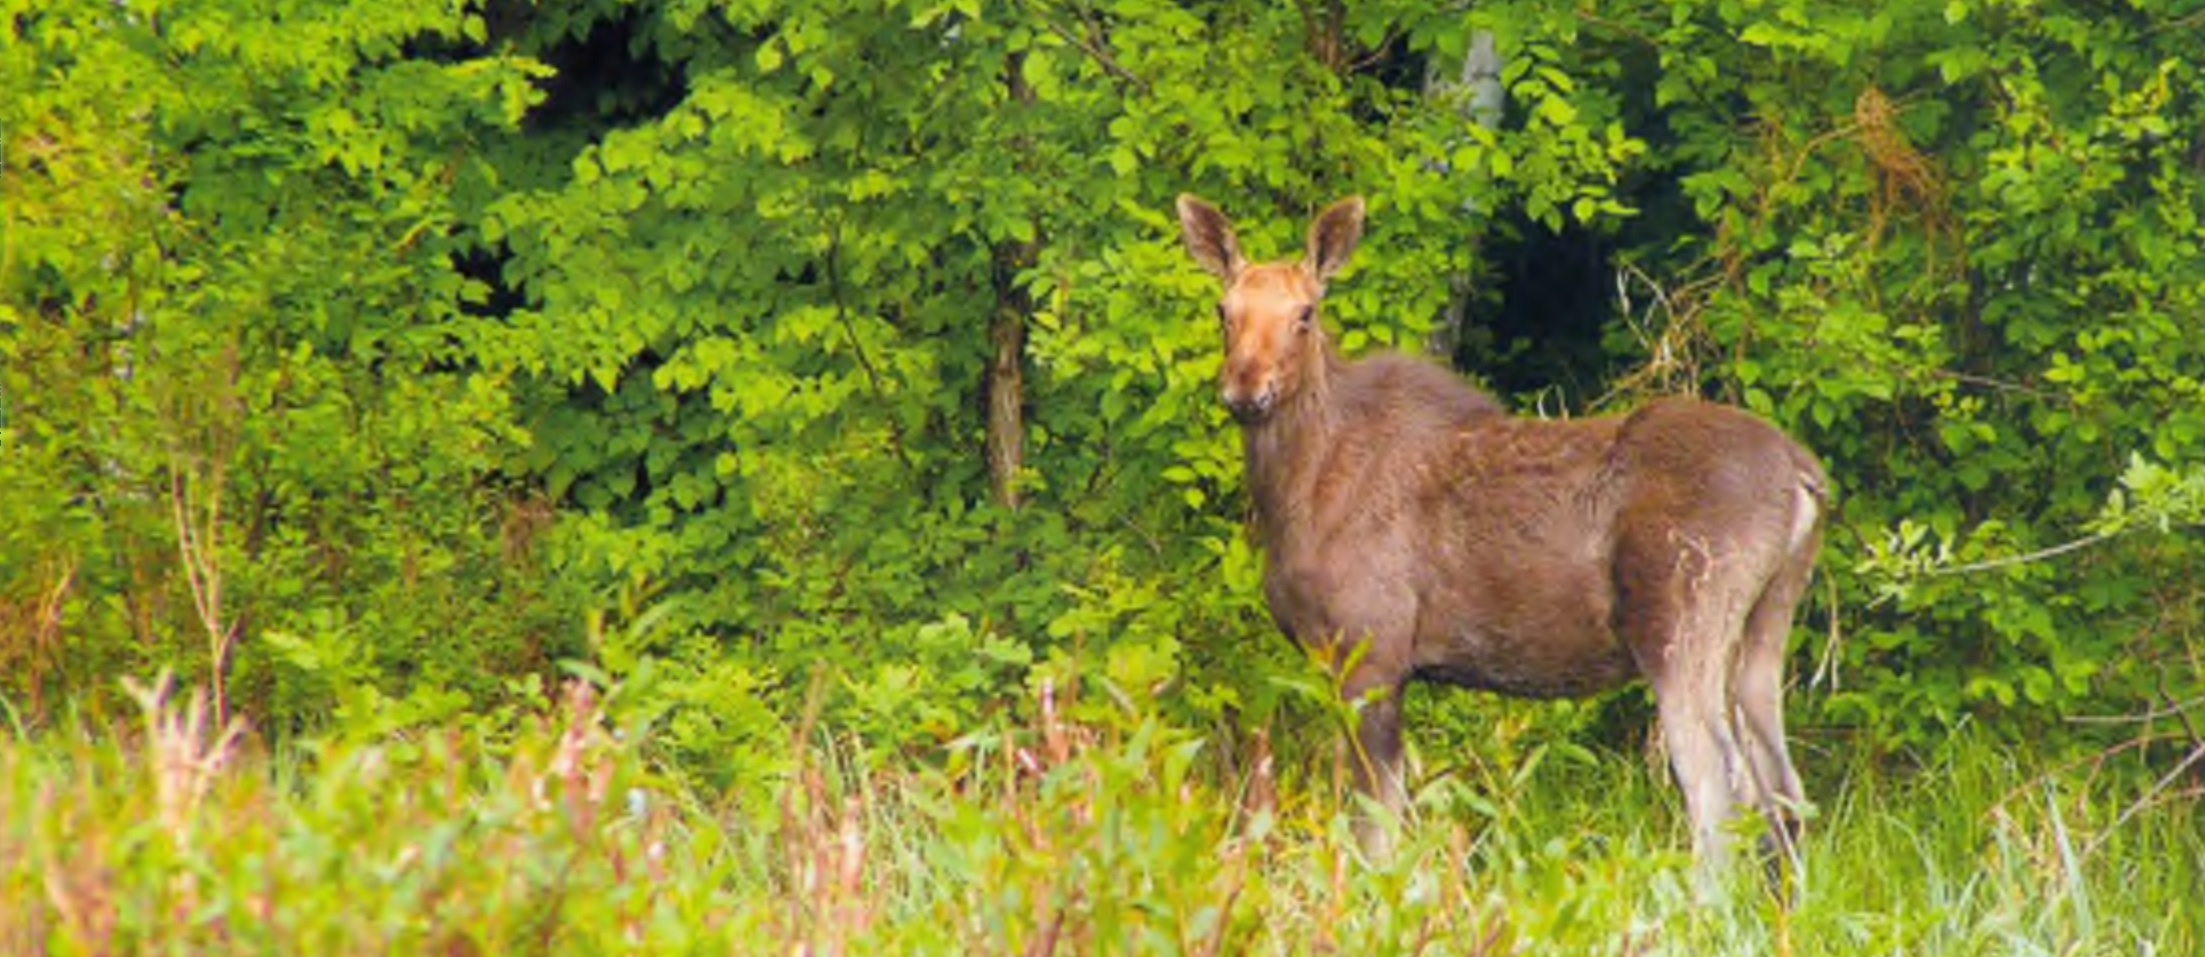 Лось (Alces alces) — самое крупное млекопитающее в лесах заповедника (Фото Д. Горшкова).